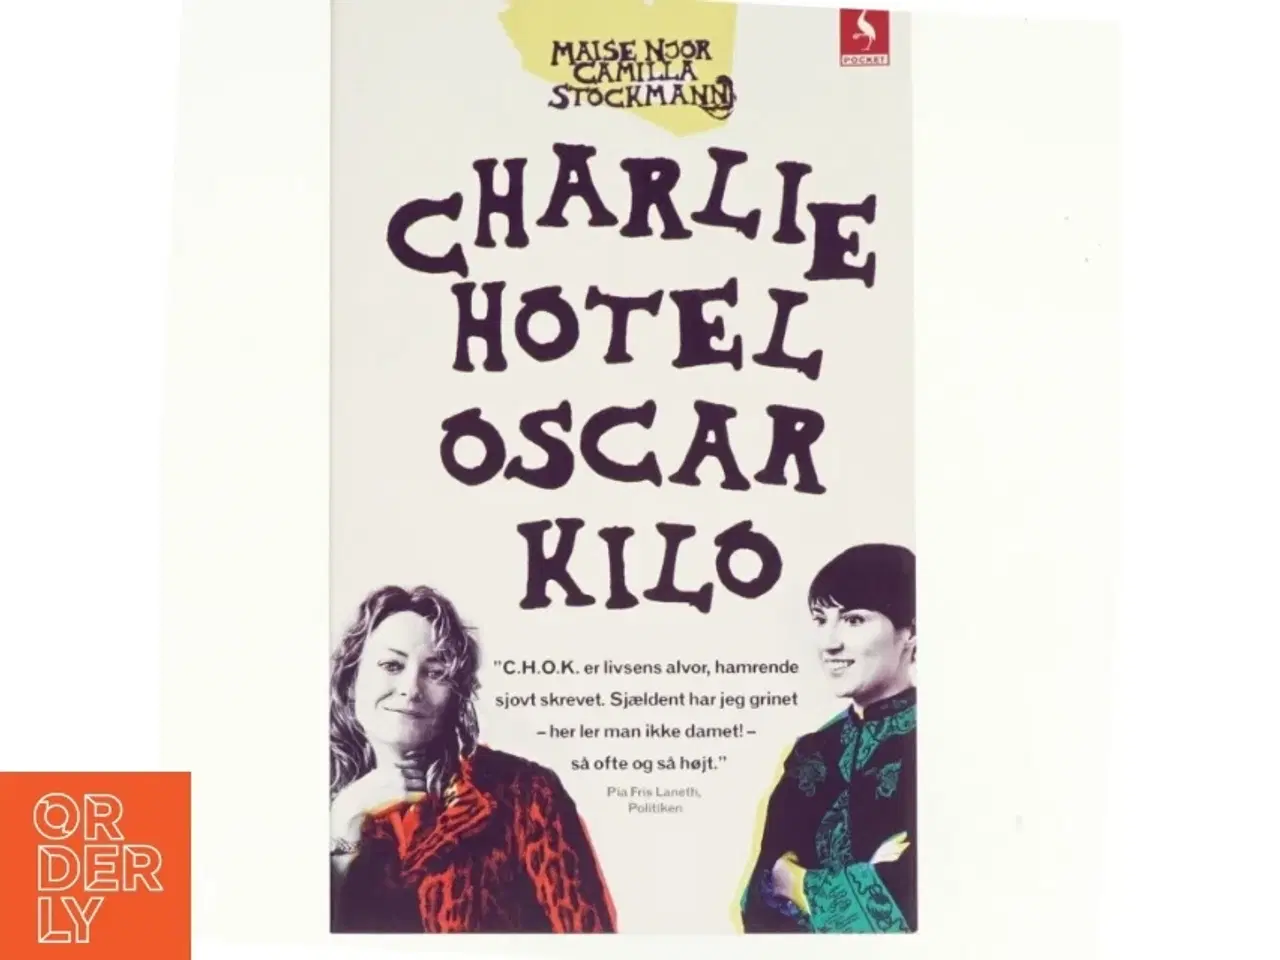 Billede 1 - Charlie Hotel Oscar Kilo af Maise Njor (Bog)